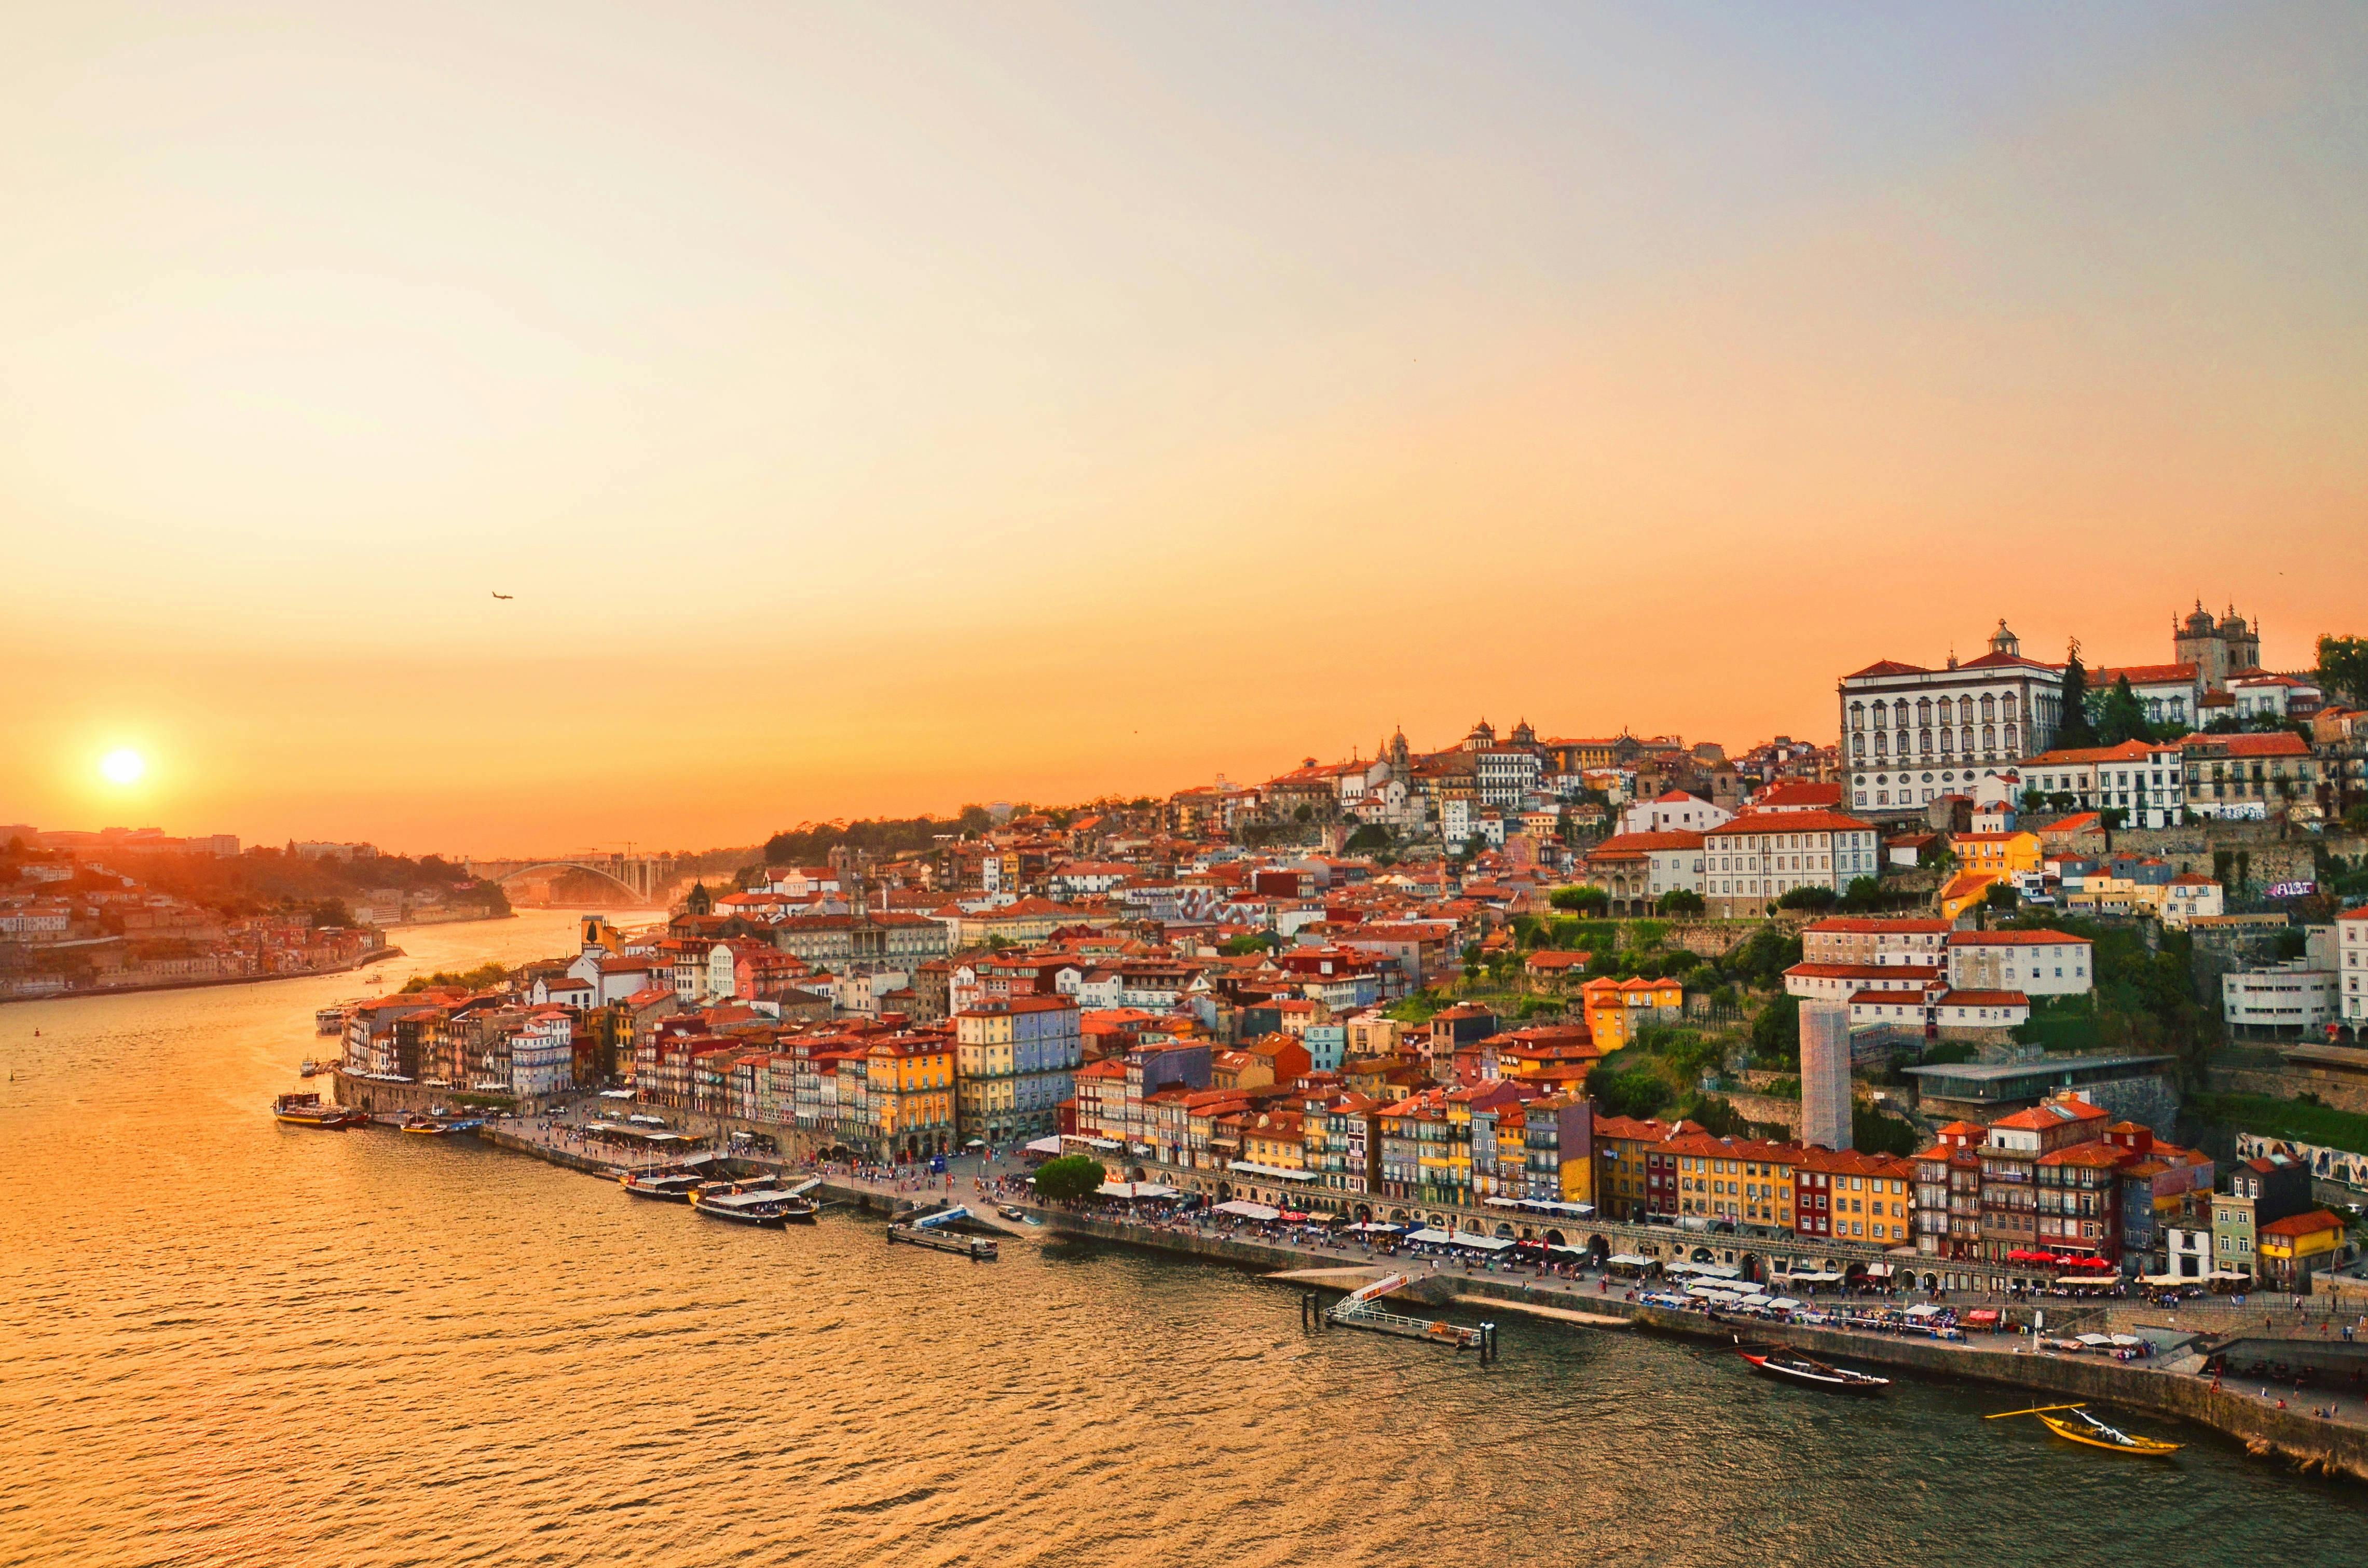 Porto-Wein-Spaziergang auf dem Dach bei Sonnenuntergang